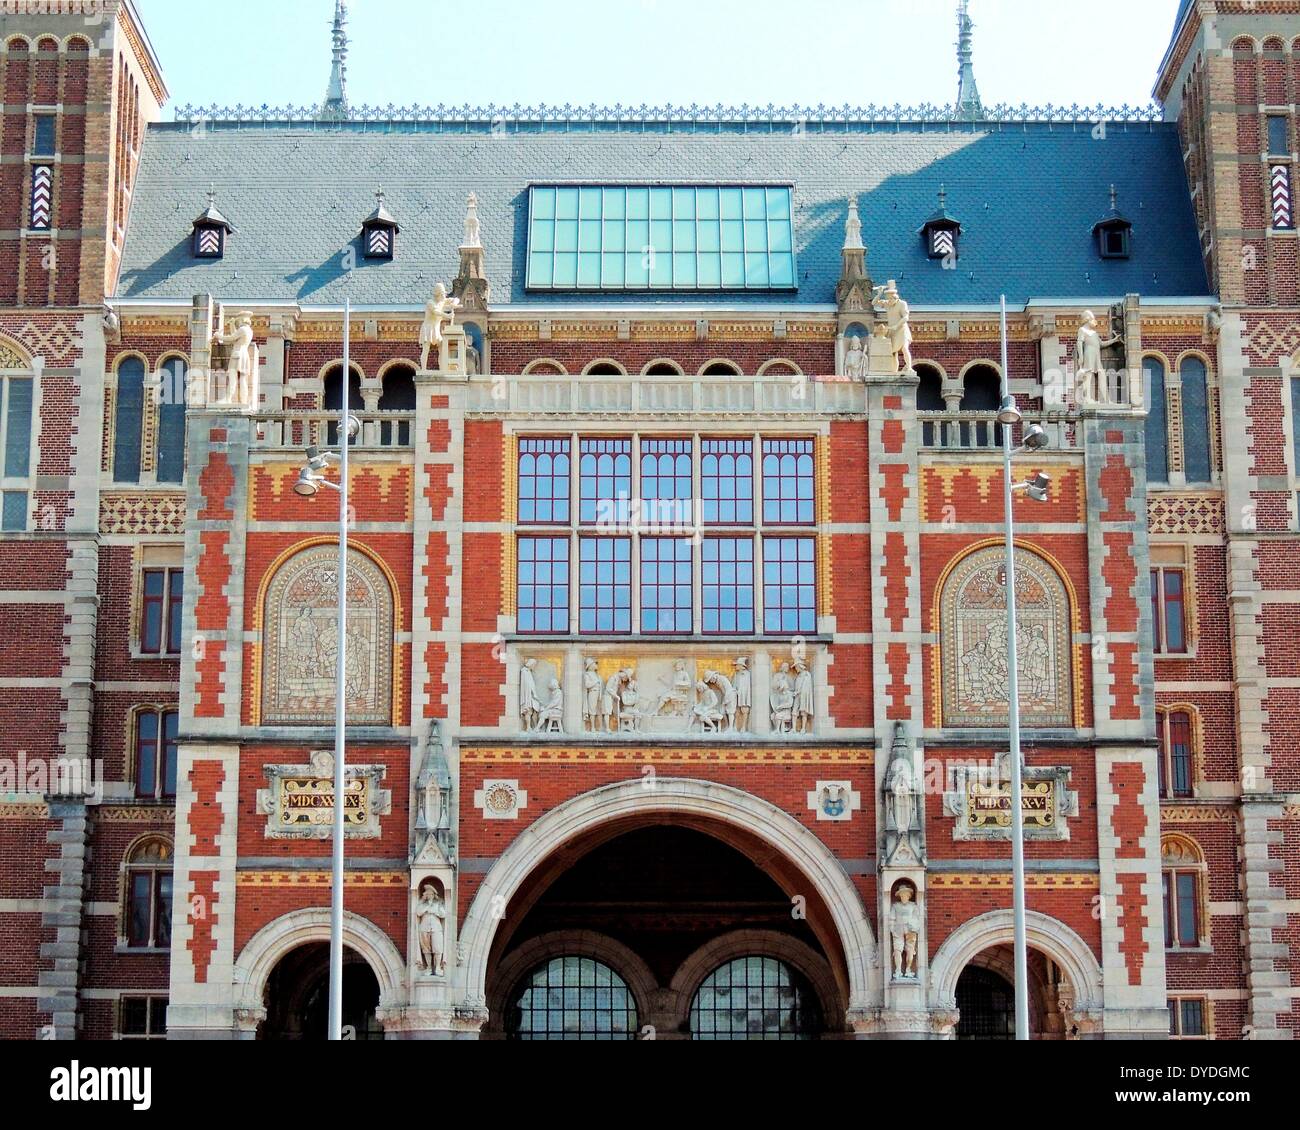 Il Rijksmuseum di arte e storia di Amsterdam, Paesi Bassi. Il Rijksmuseum è stata fondata a L'Aia nel 1800 e si trasferì ad Amsterdam nel 1808. L'attuale edificio principale è stato progettato da Pierre Cuypers e stato originariamente aperto nel 1885. È stato riaperto dopo la ristrutturazione nel 2013. Foto Stock